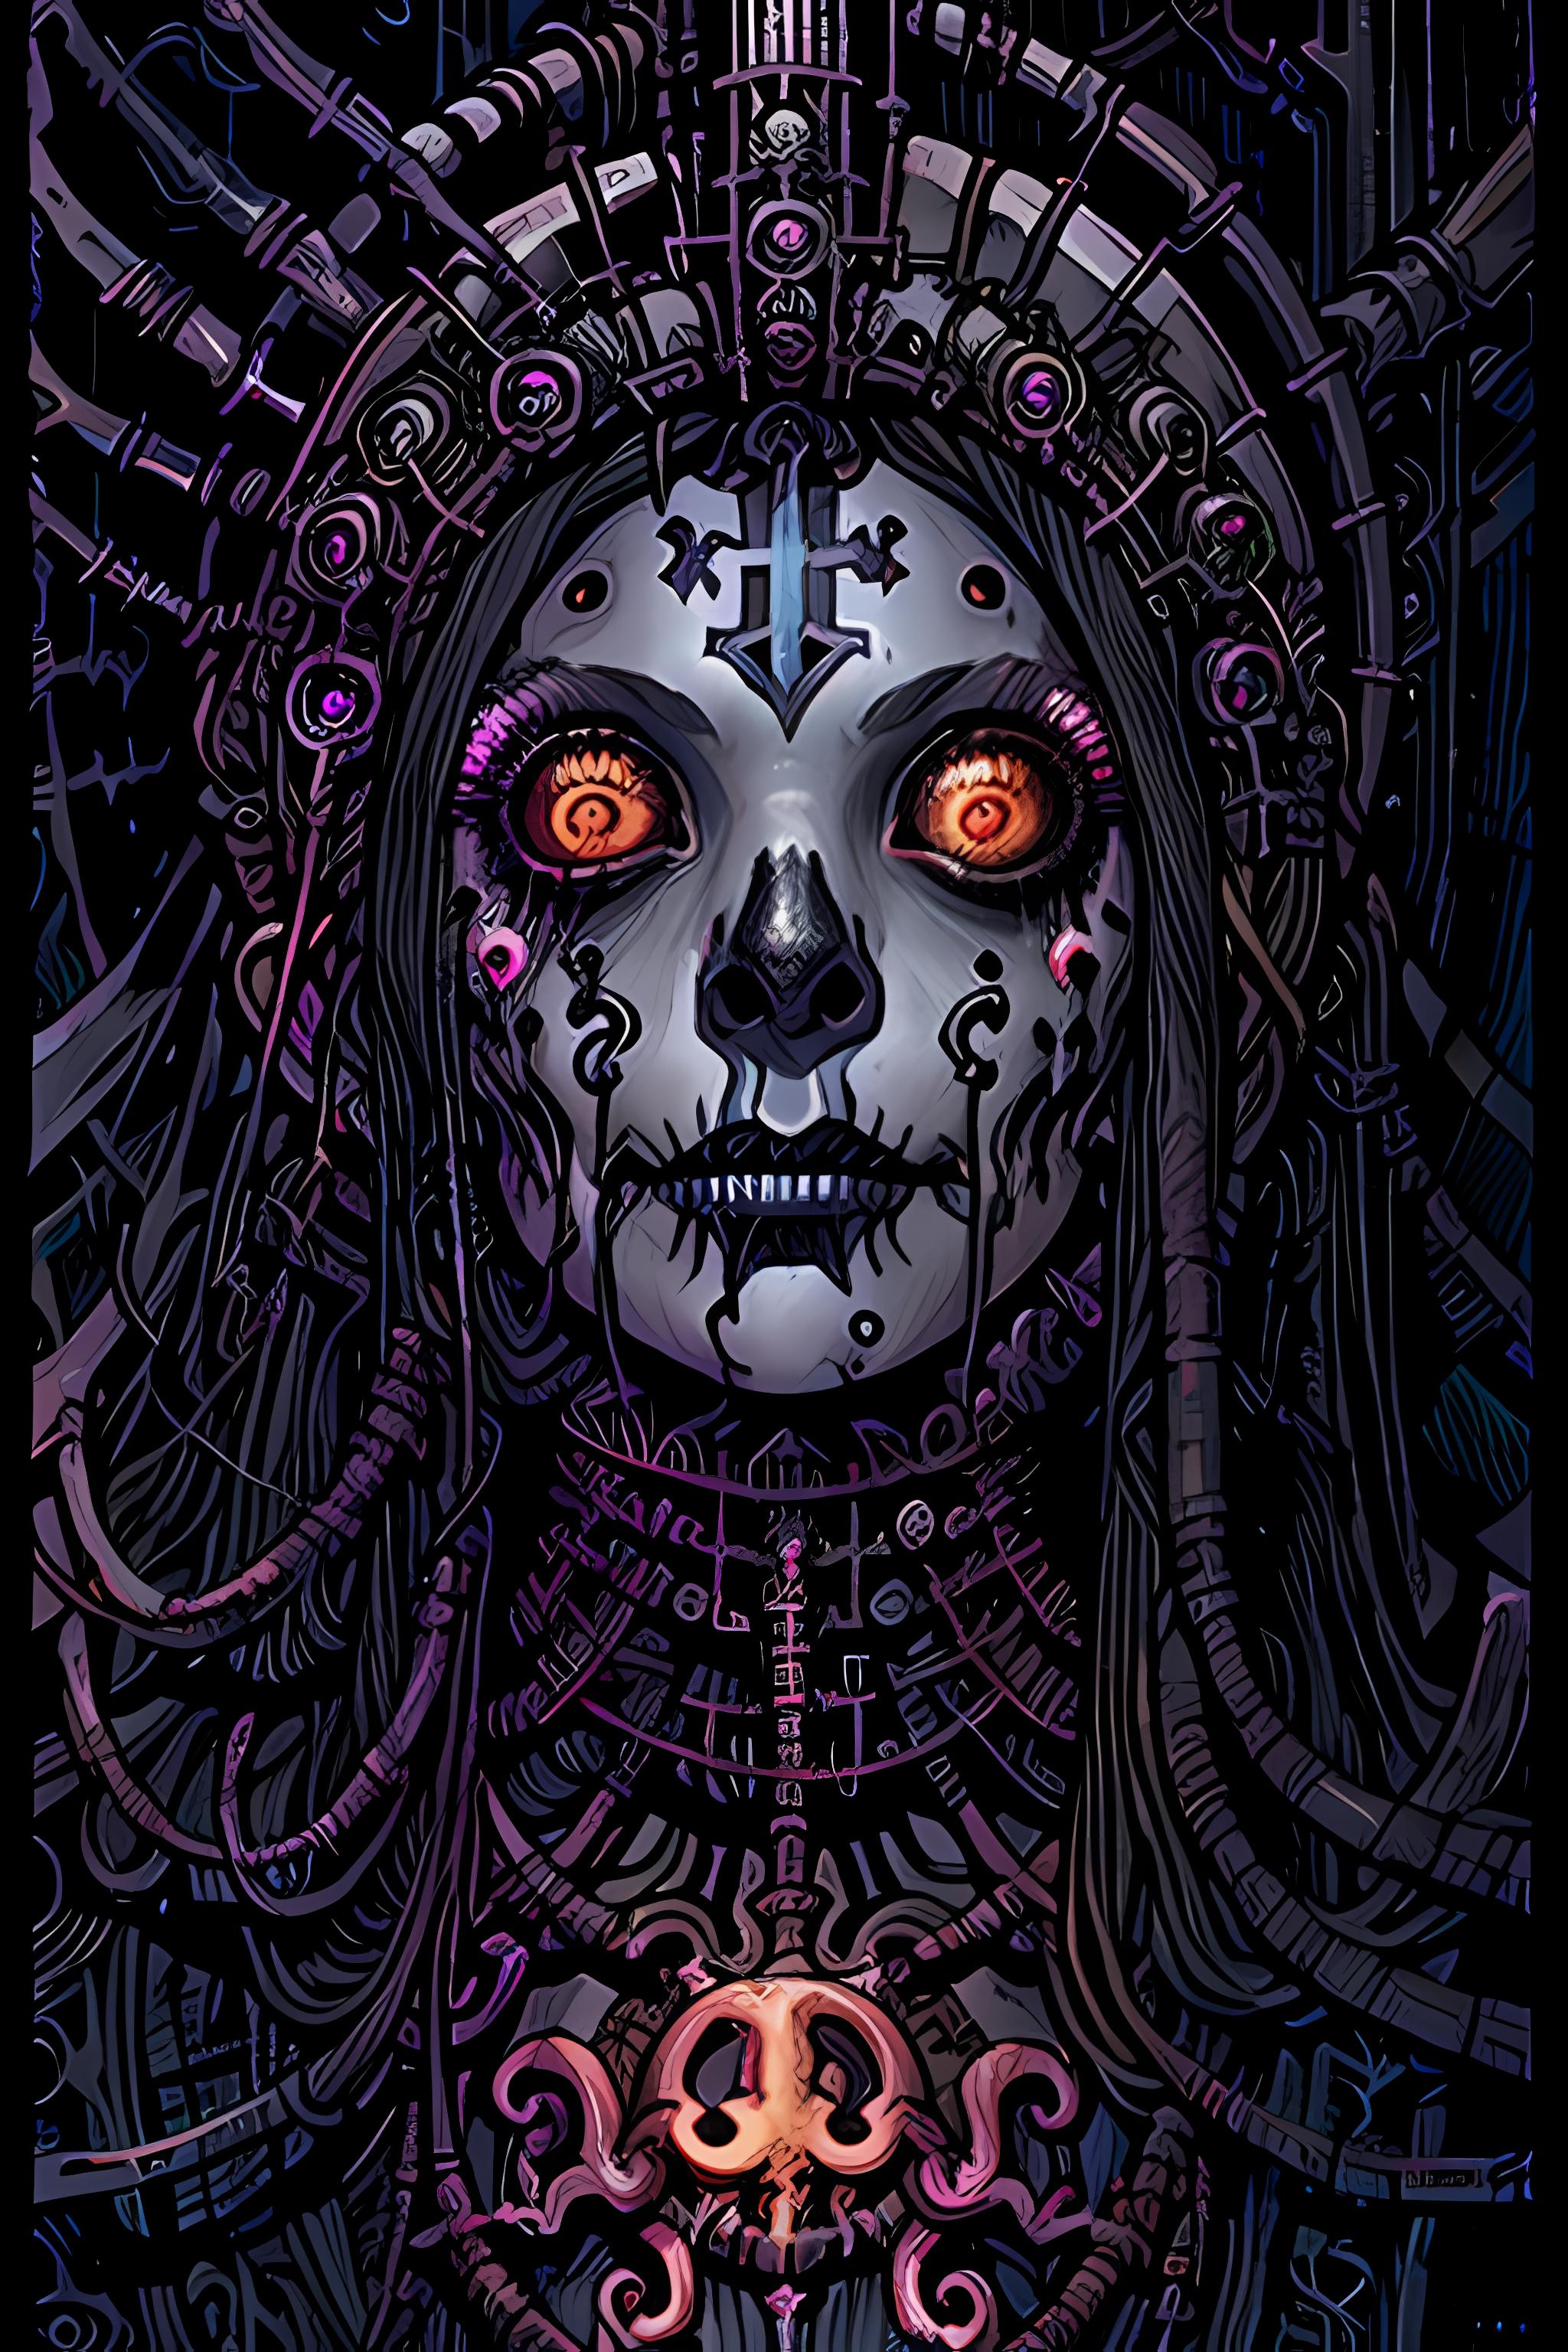 Cyberpunk 2077 Tarot card 512x1024 image by AIartstillery